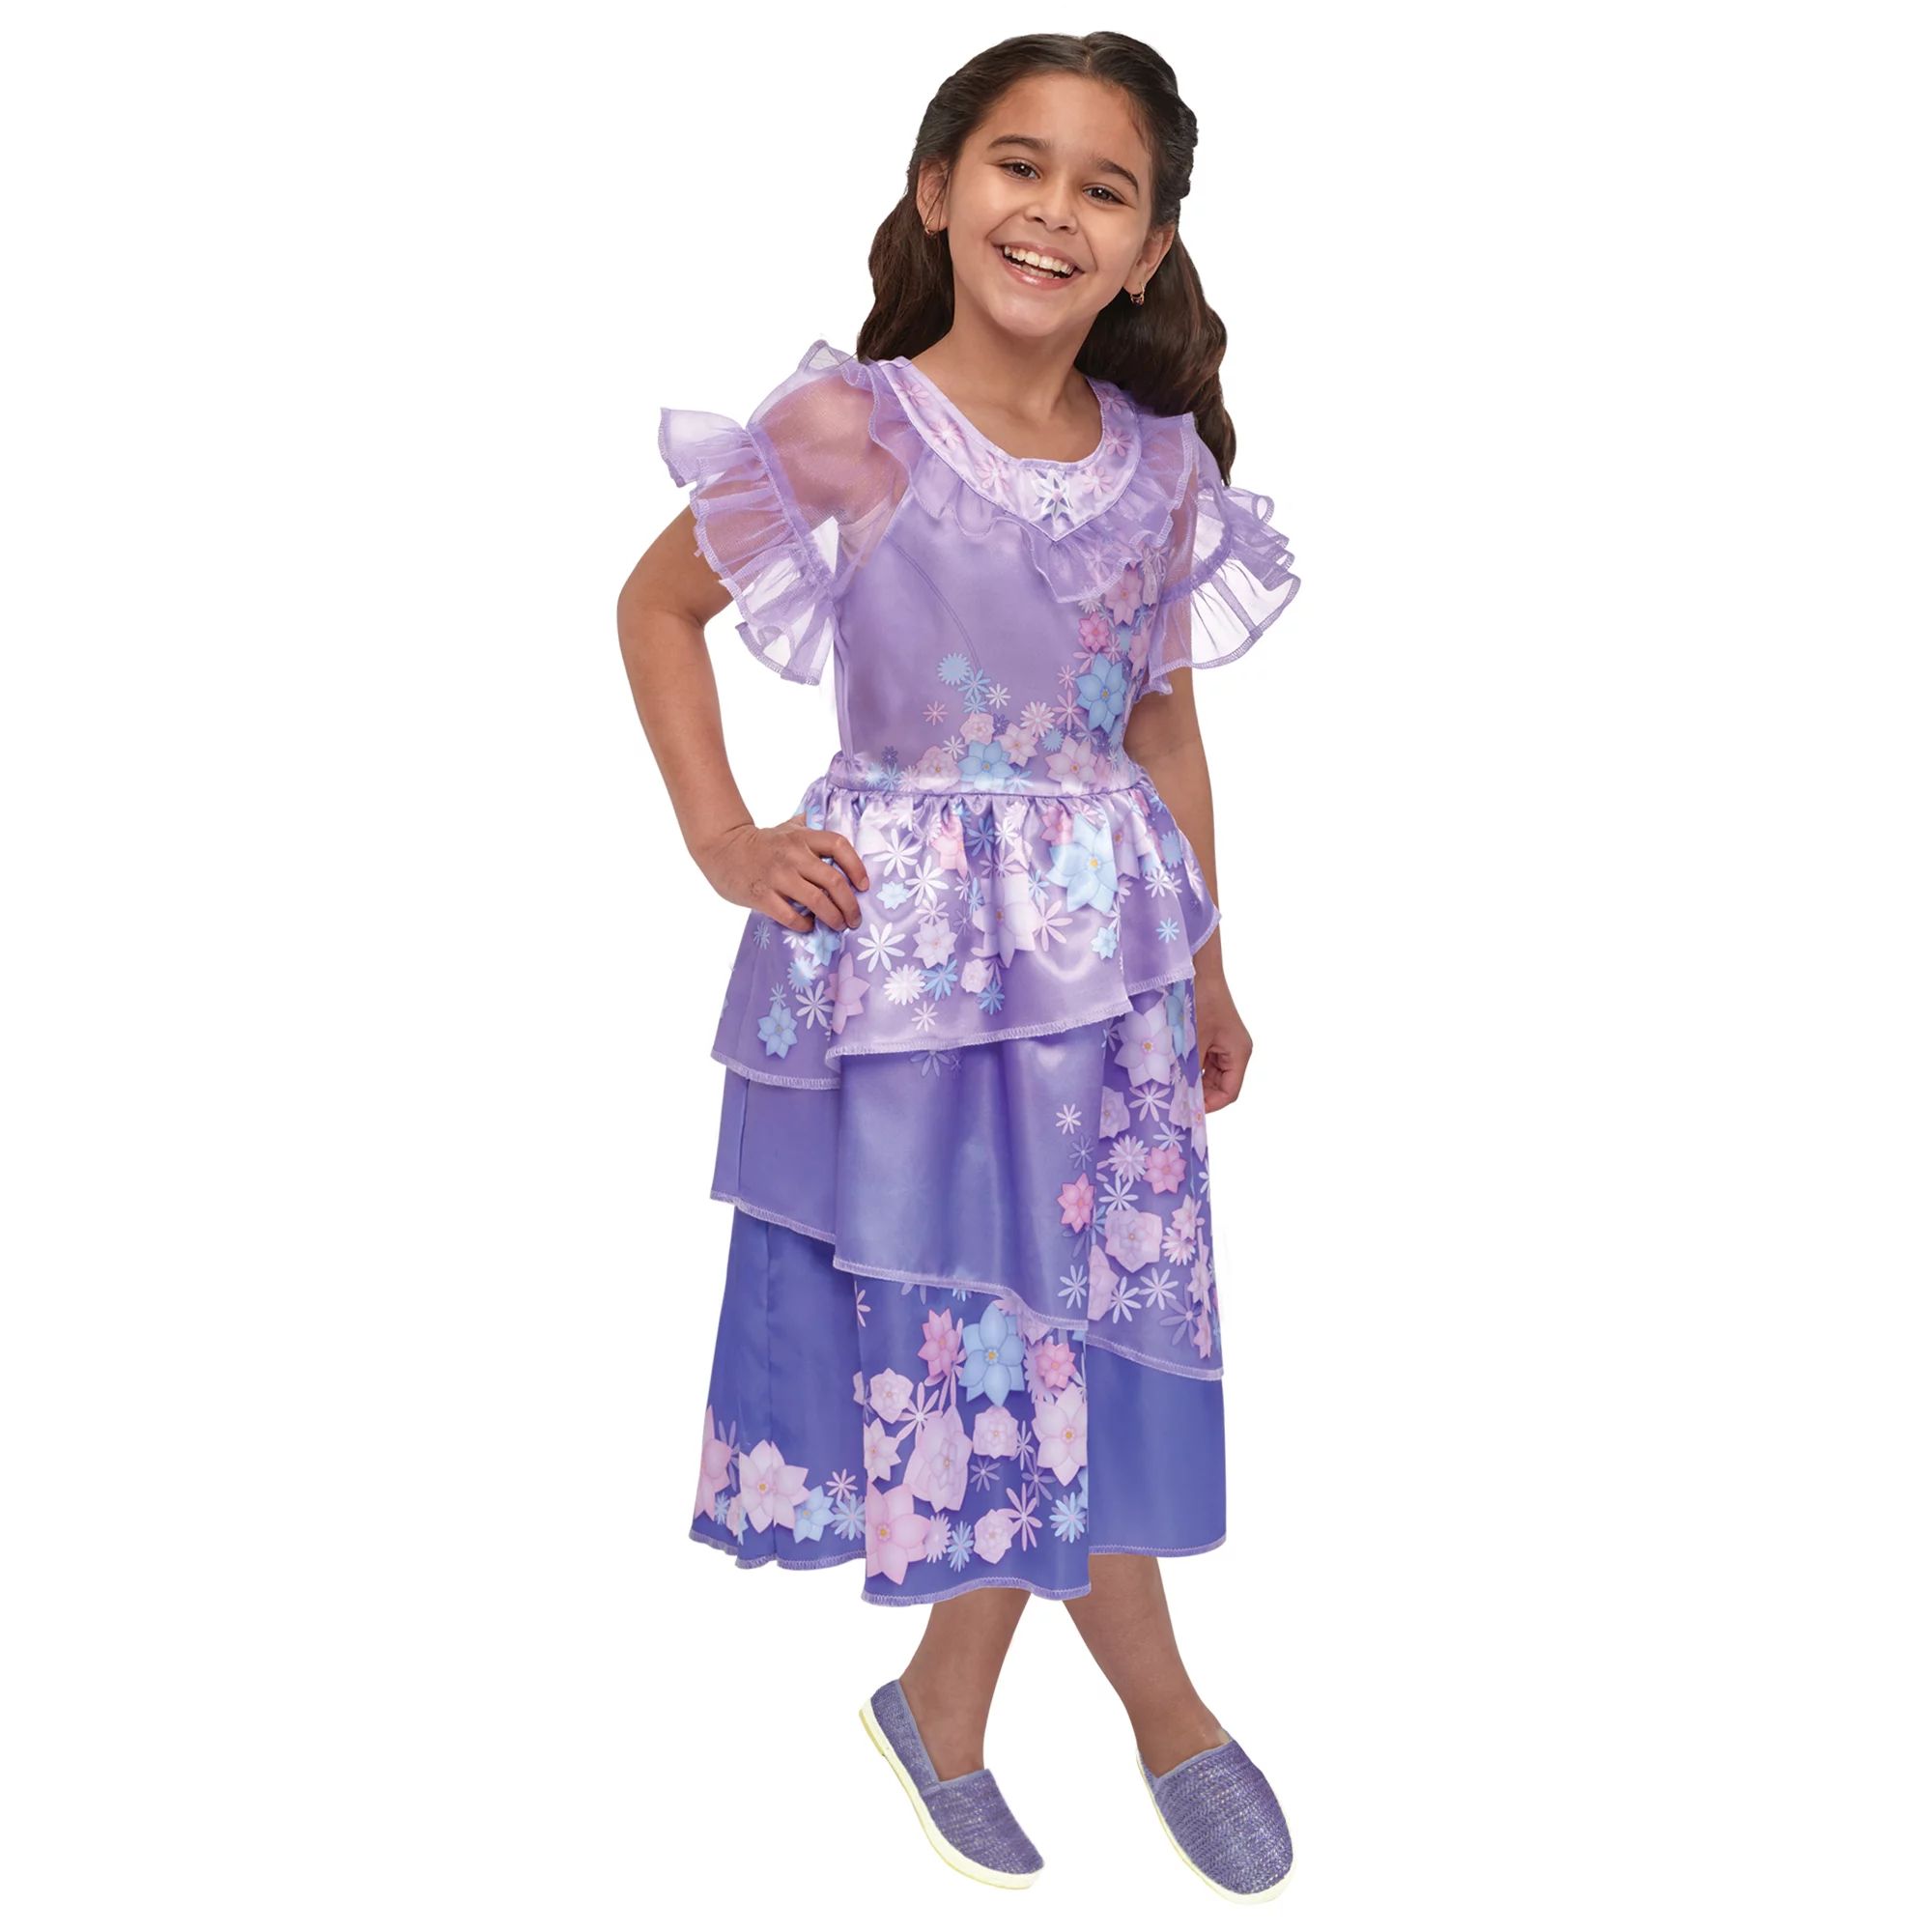 Encanto Isabela Dress for Child | Walmart (US)